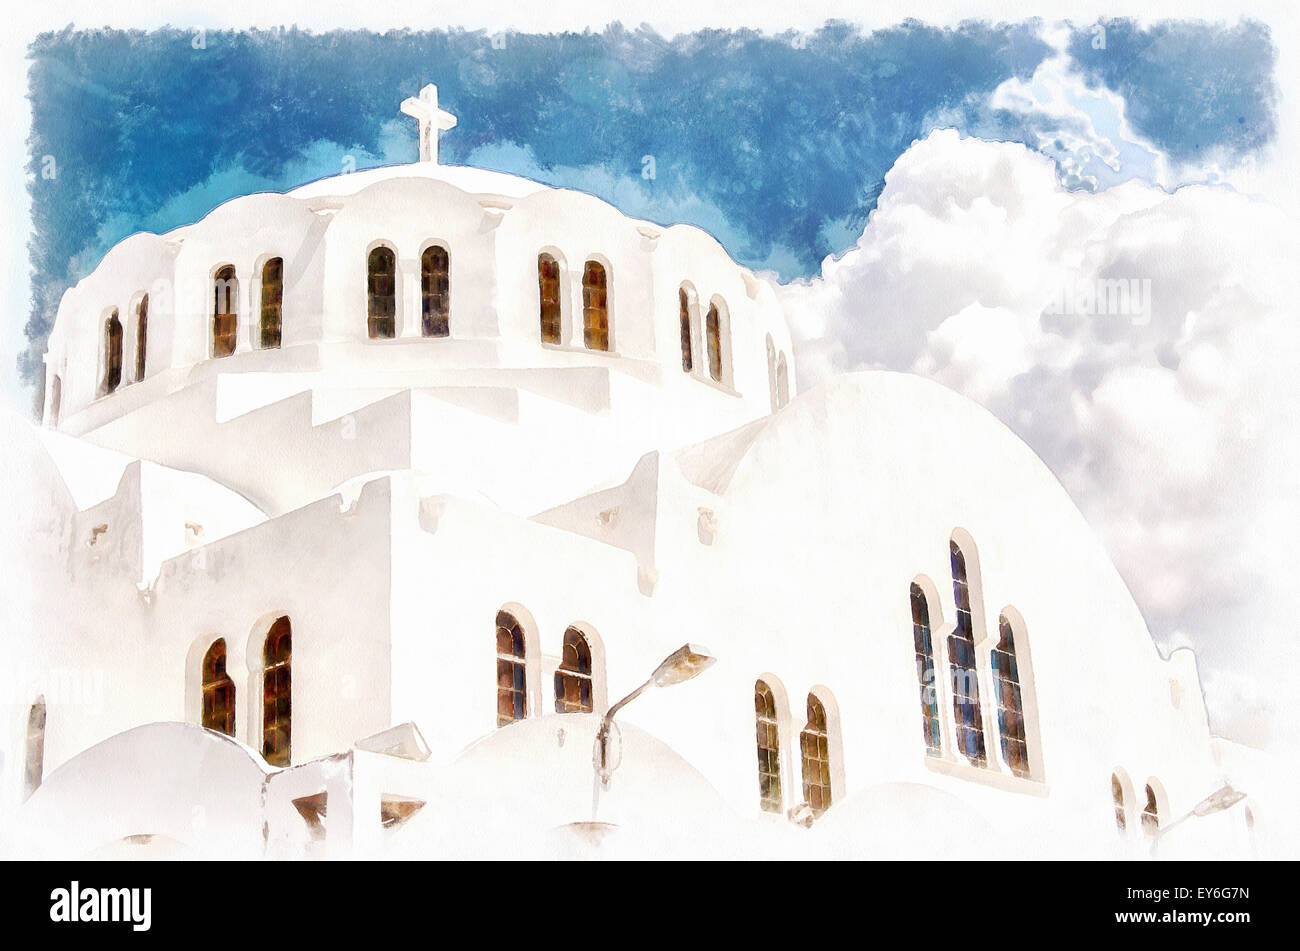 La cathédrale orthodoxe métropolitaine situé dans la capitale de Fira sur l'île grecque de Santorin. Banque D'Images